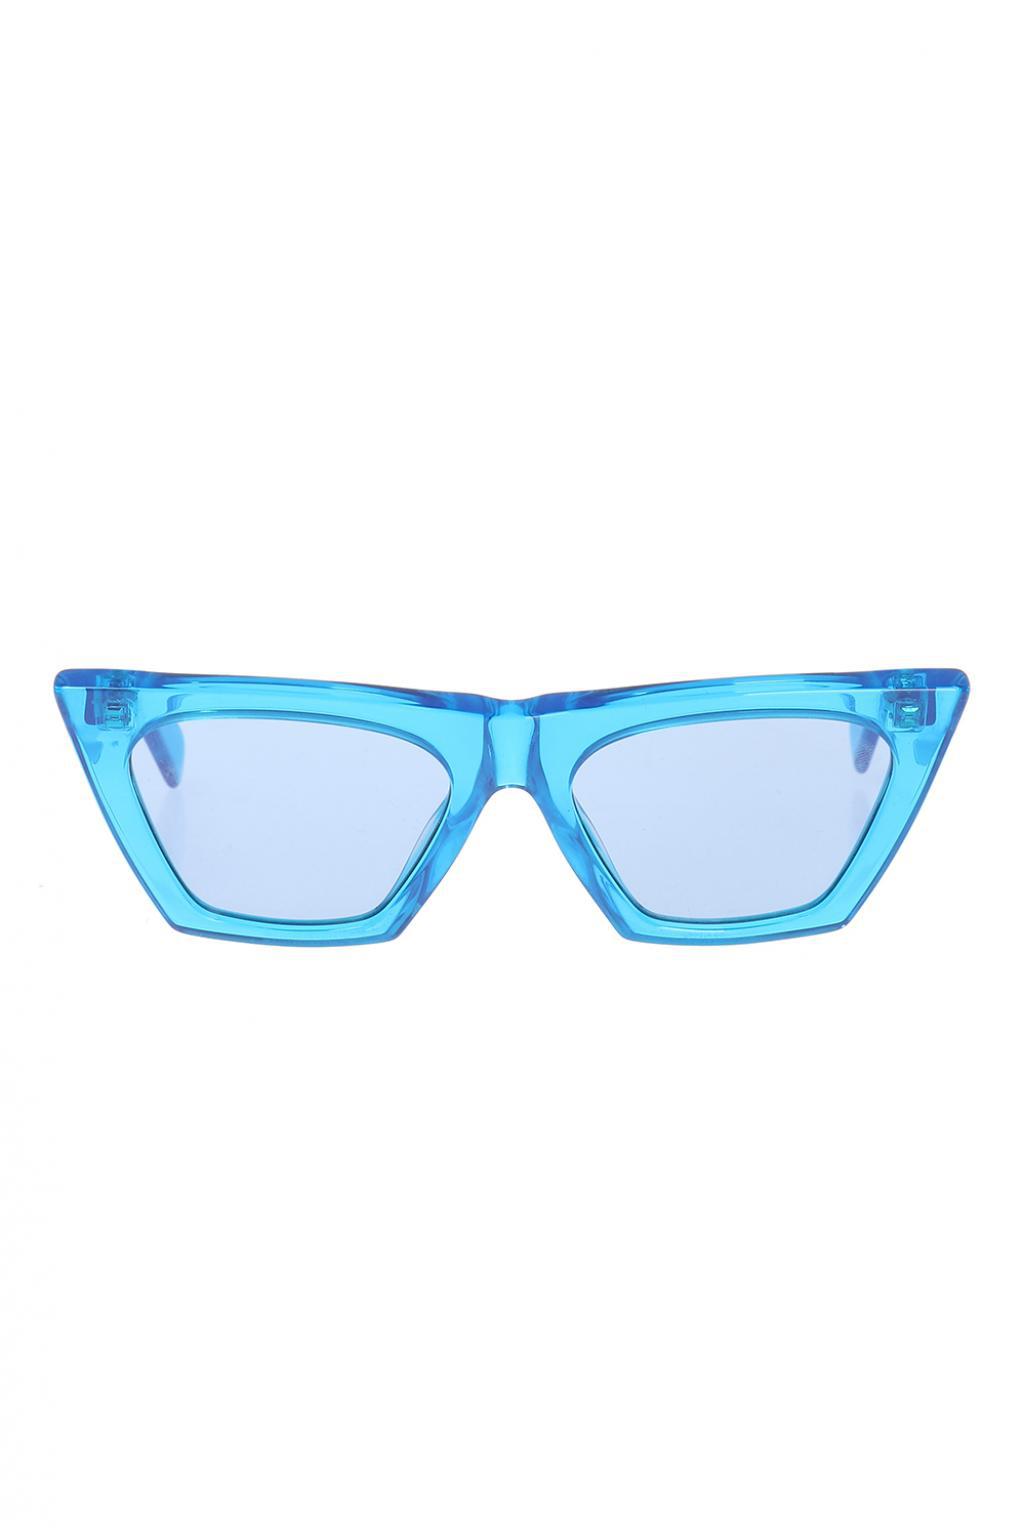 Edge sunglasses Celine Blue in Plastic - 36100436